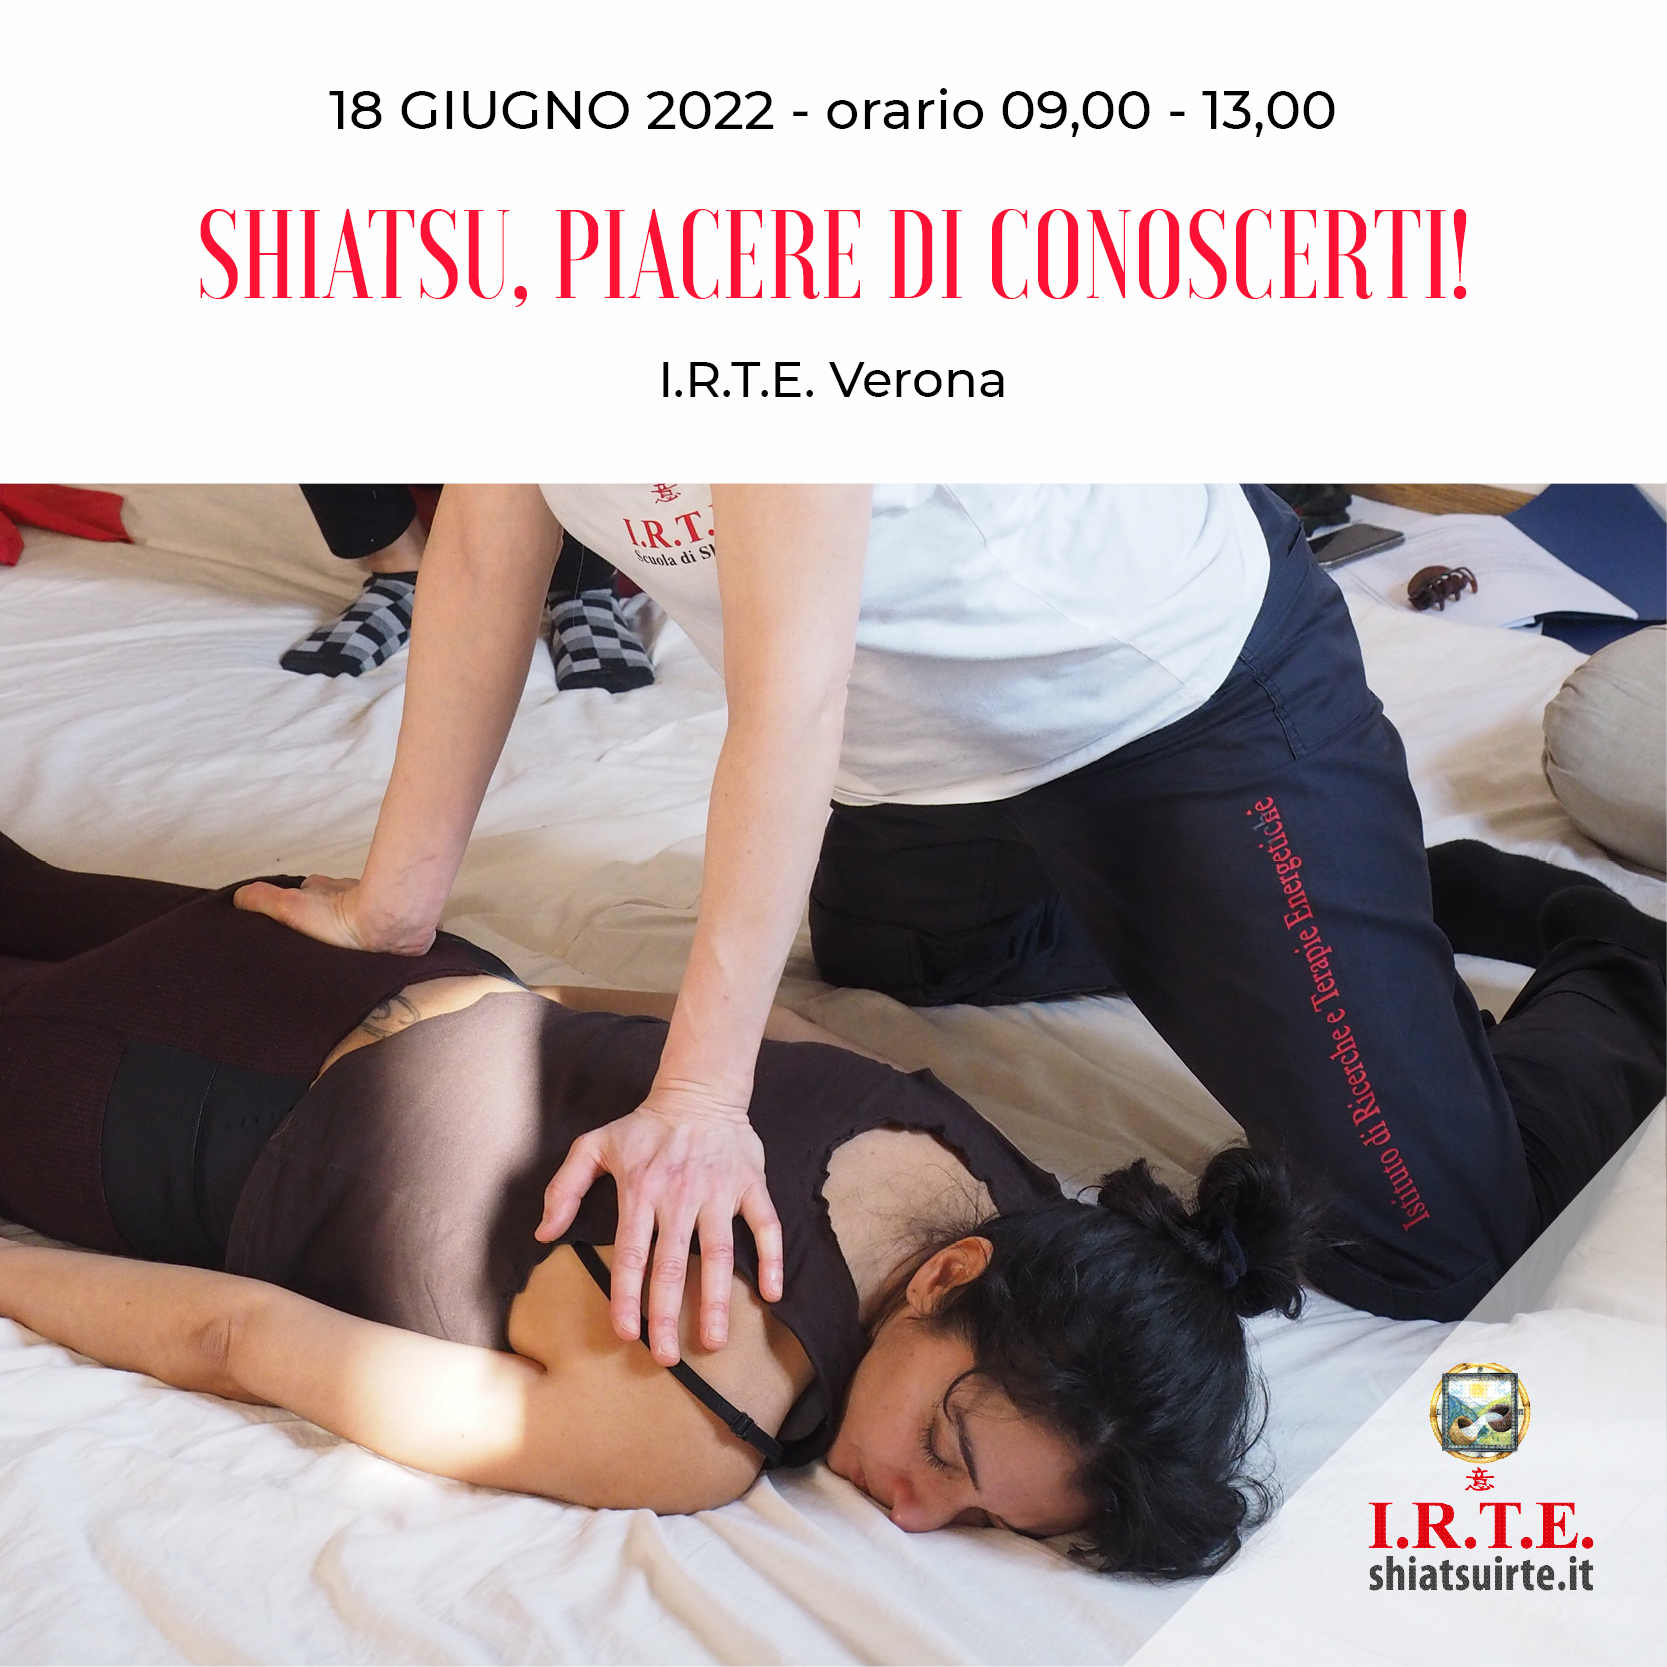 Verona, 18 Giugno 2022 Shiatsu piacere di conoscerti!